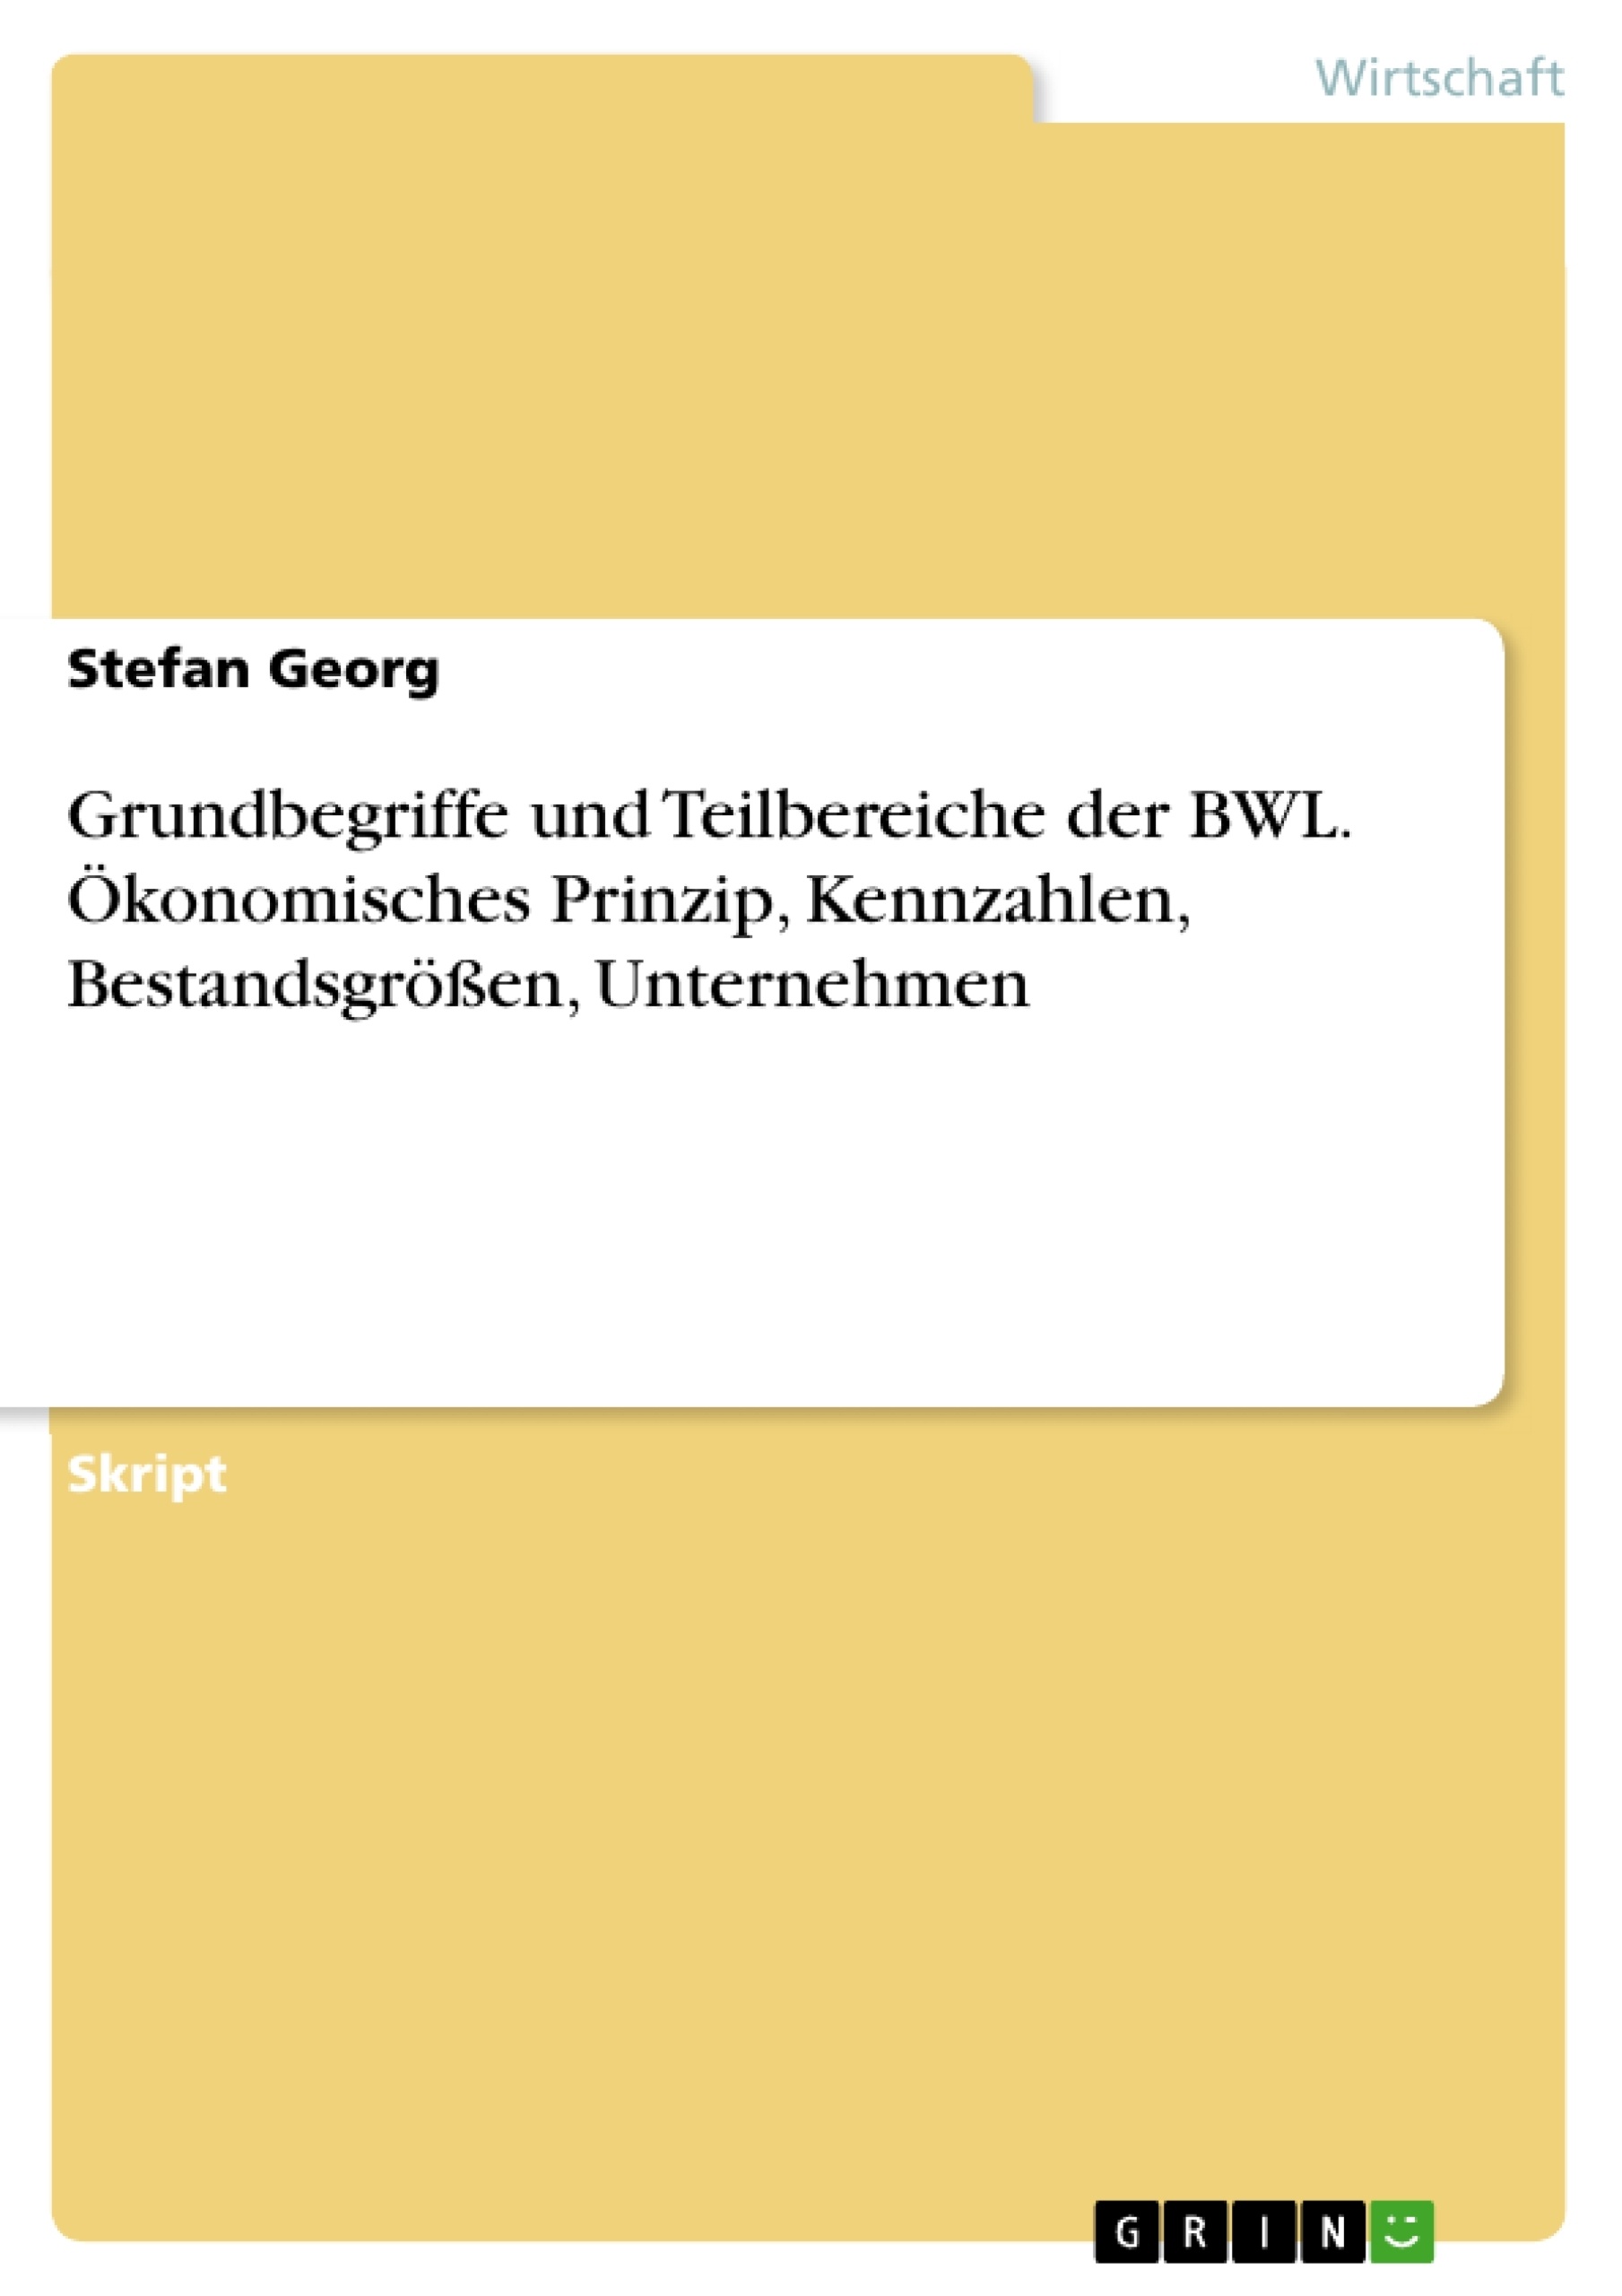 Titre: Grundbegriffe und Teilbereiche der BWL. Ökonomisches Prinzip, Kennzahlen, Bestandsgrößen, Unternehmen